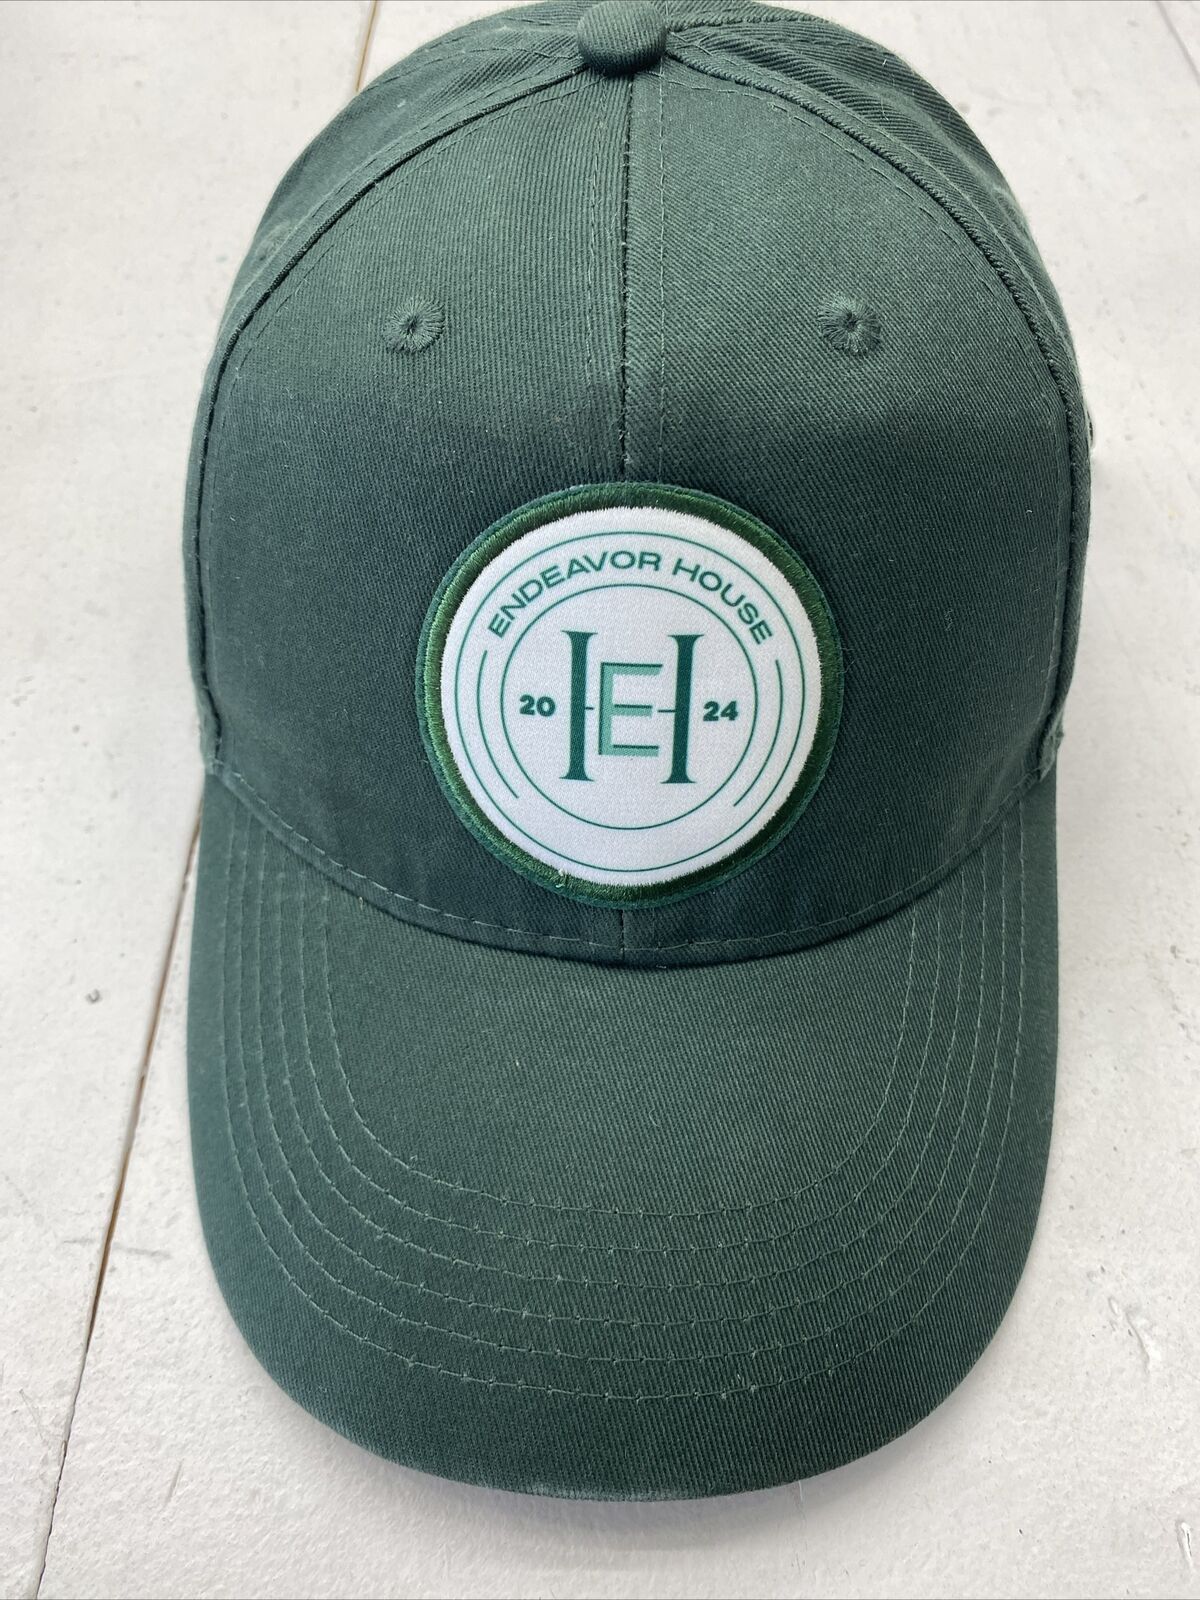 Endeavor House 2024 Green Adjustable Hat